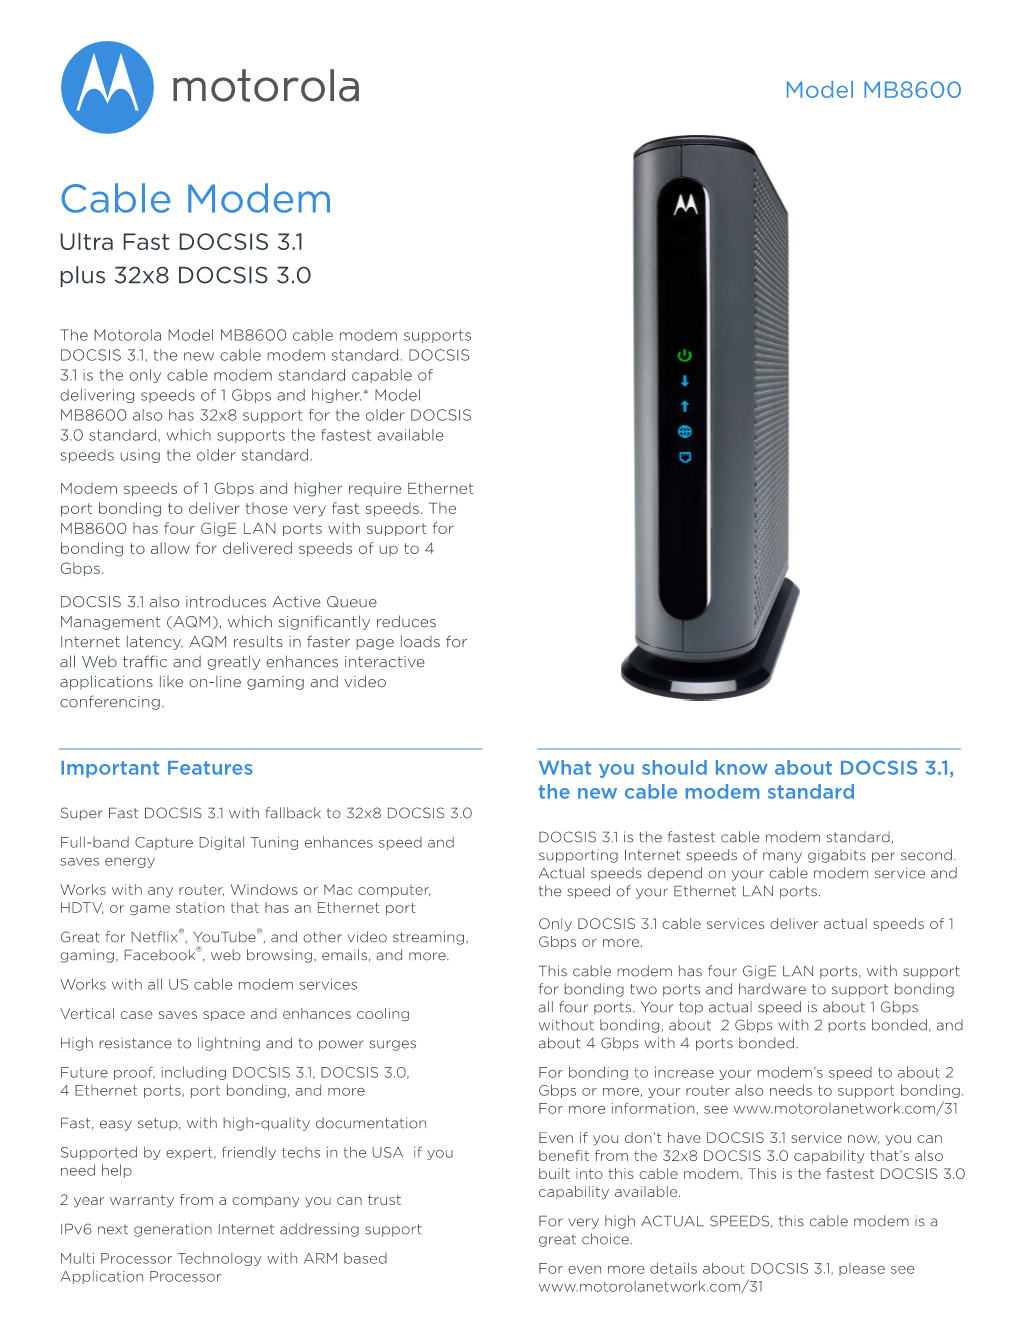 Cable Modem Ultra Fast DOCSIS 3.1 Plus 32X8 DOCSIS 3.0